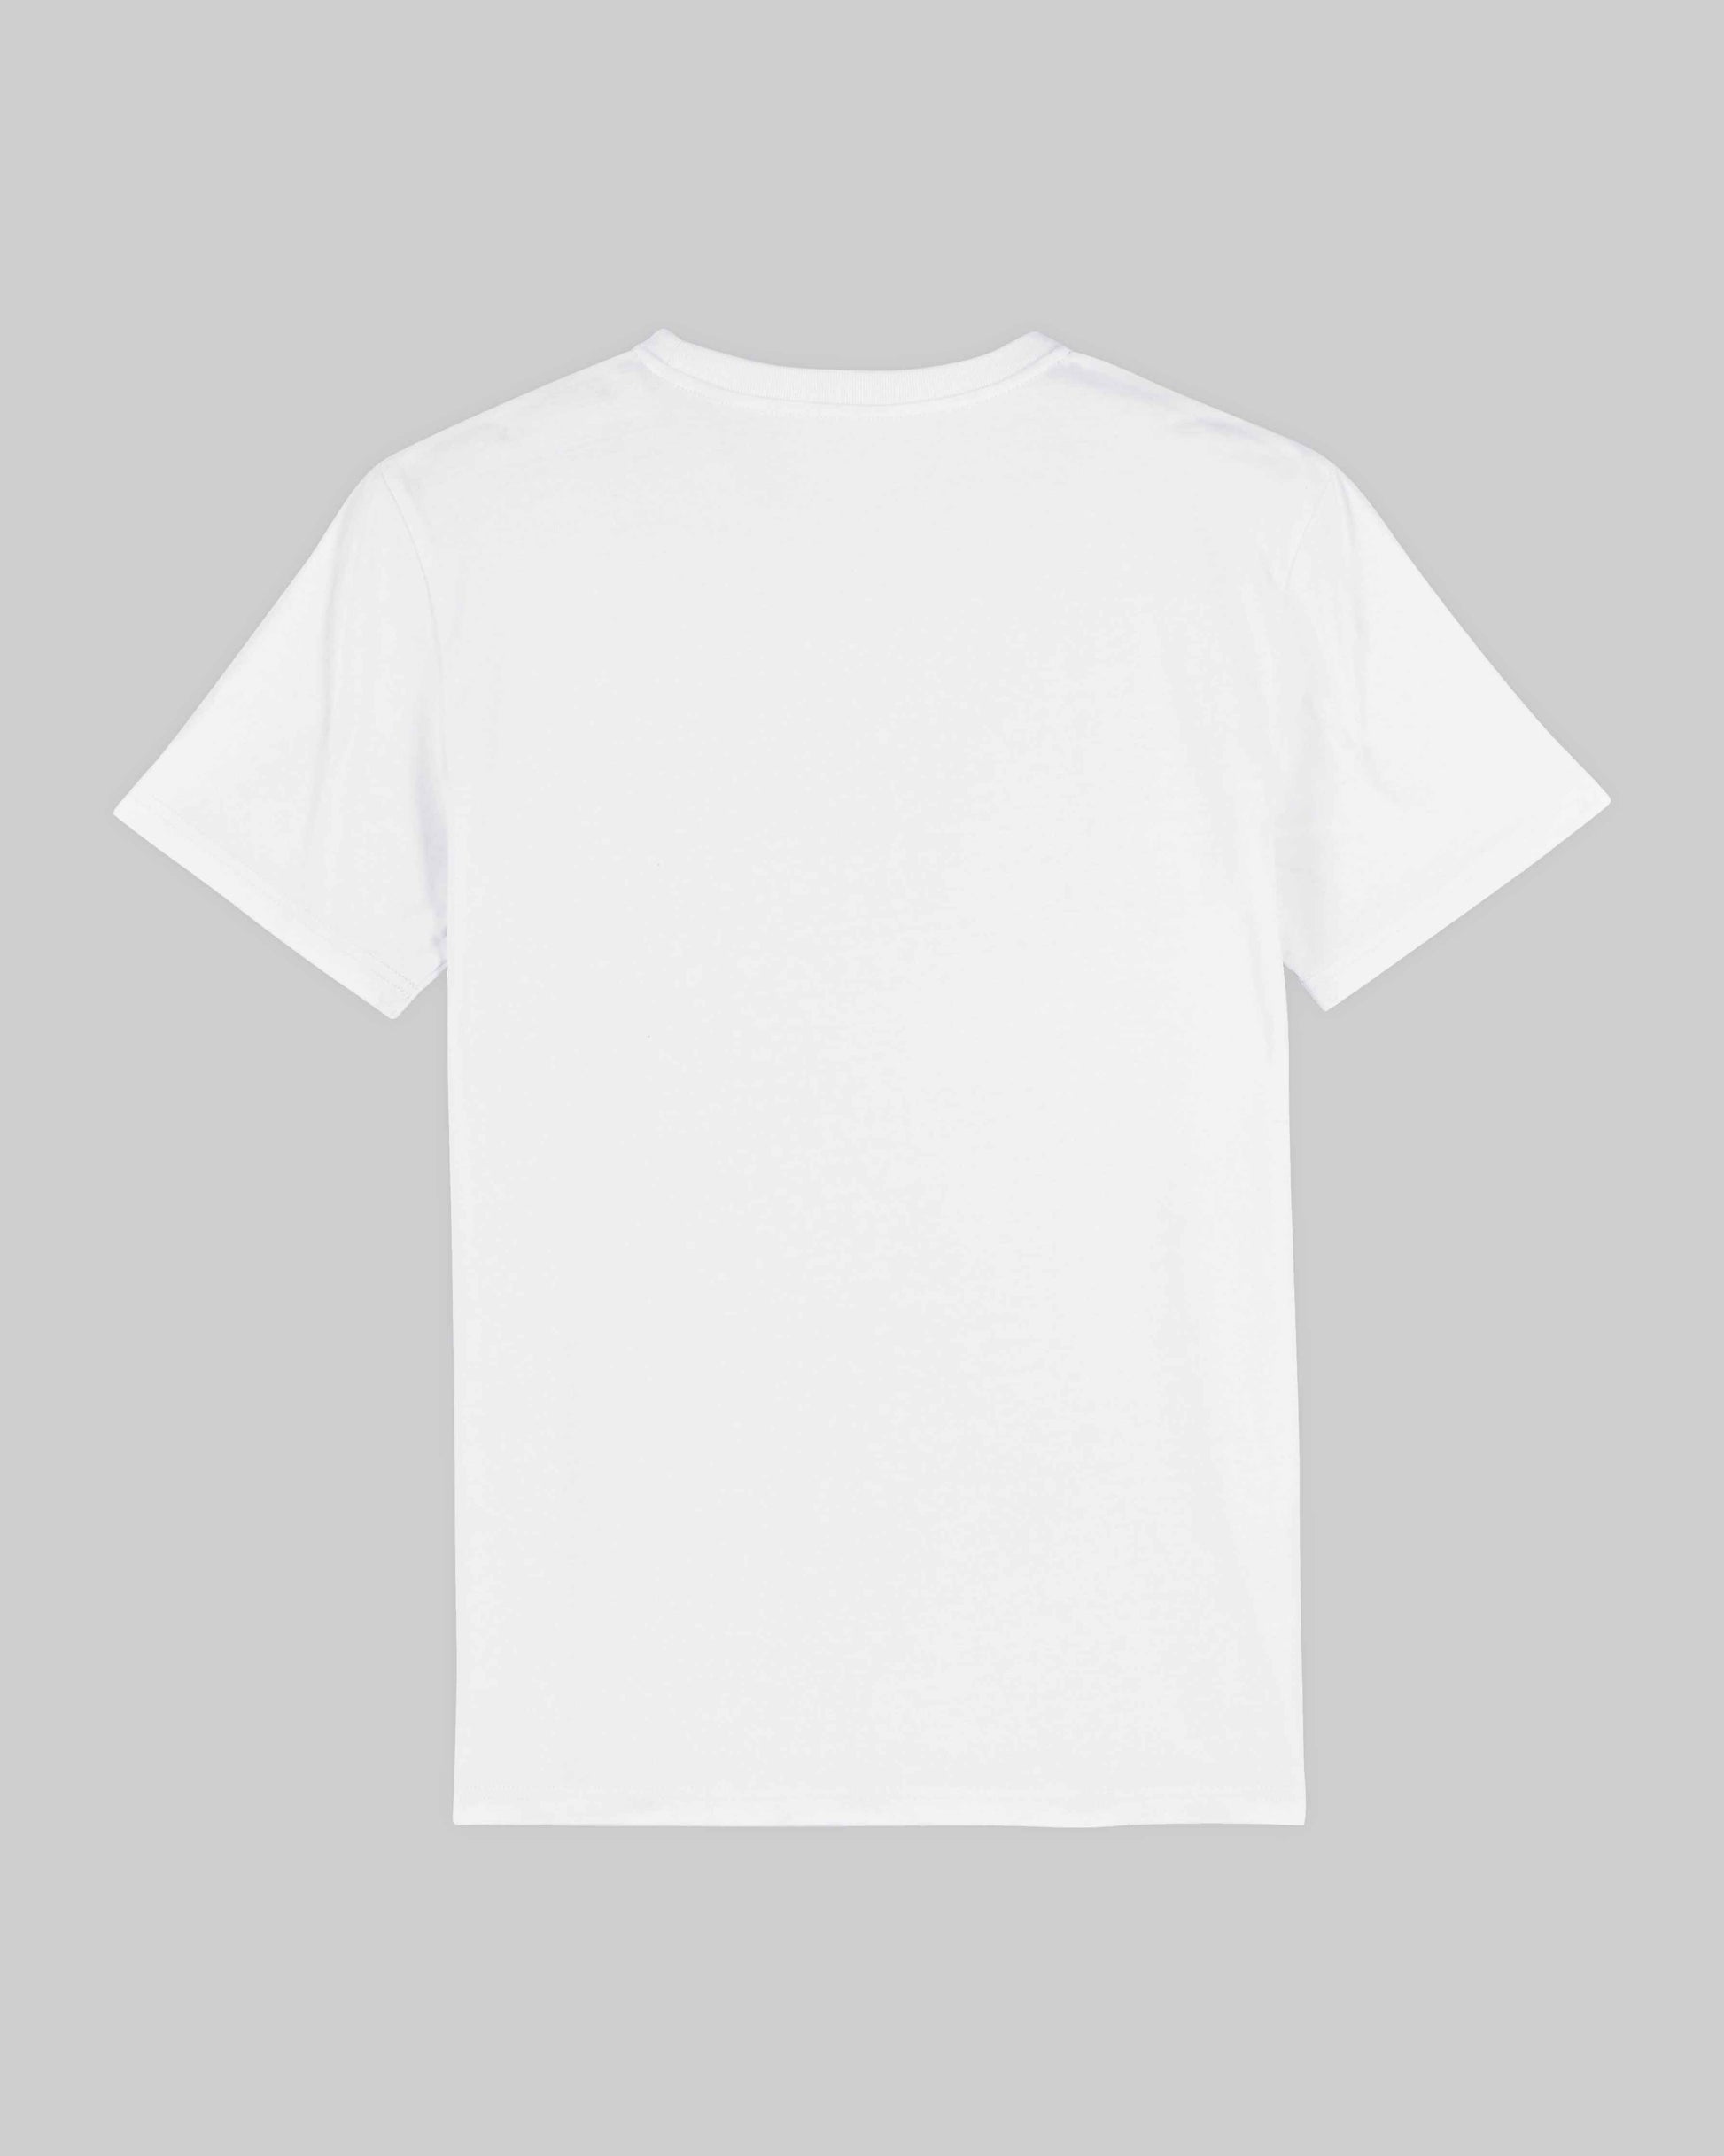 EINHORST® unisex Organic Shirt in Weiß mit dem Motiv "lgbtq+ Regenbogen" in der Kombination bunter Regenbogen mit schwarzer Schrift, Bild von Shirt von hinten